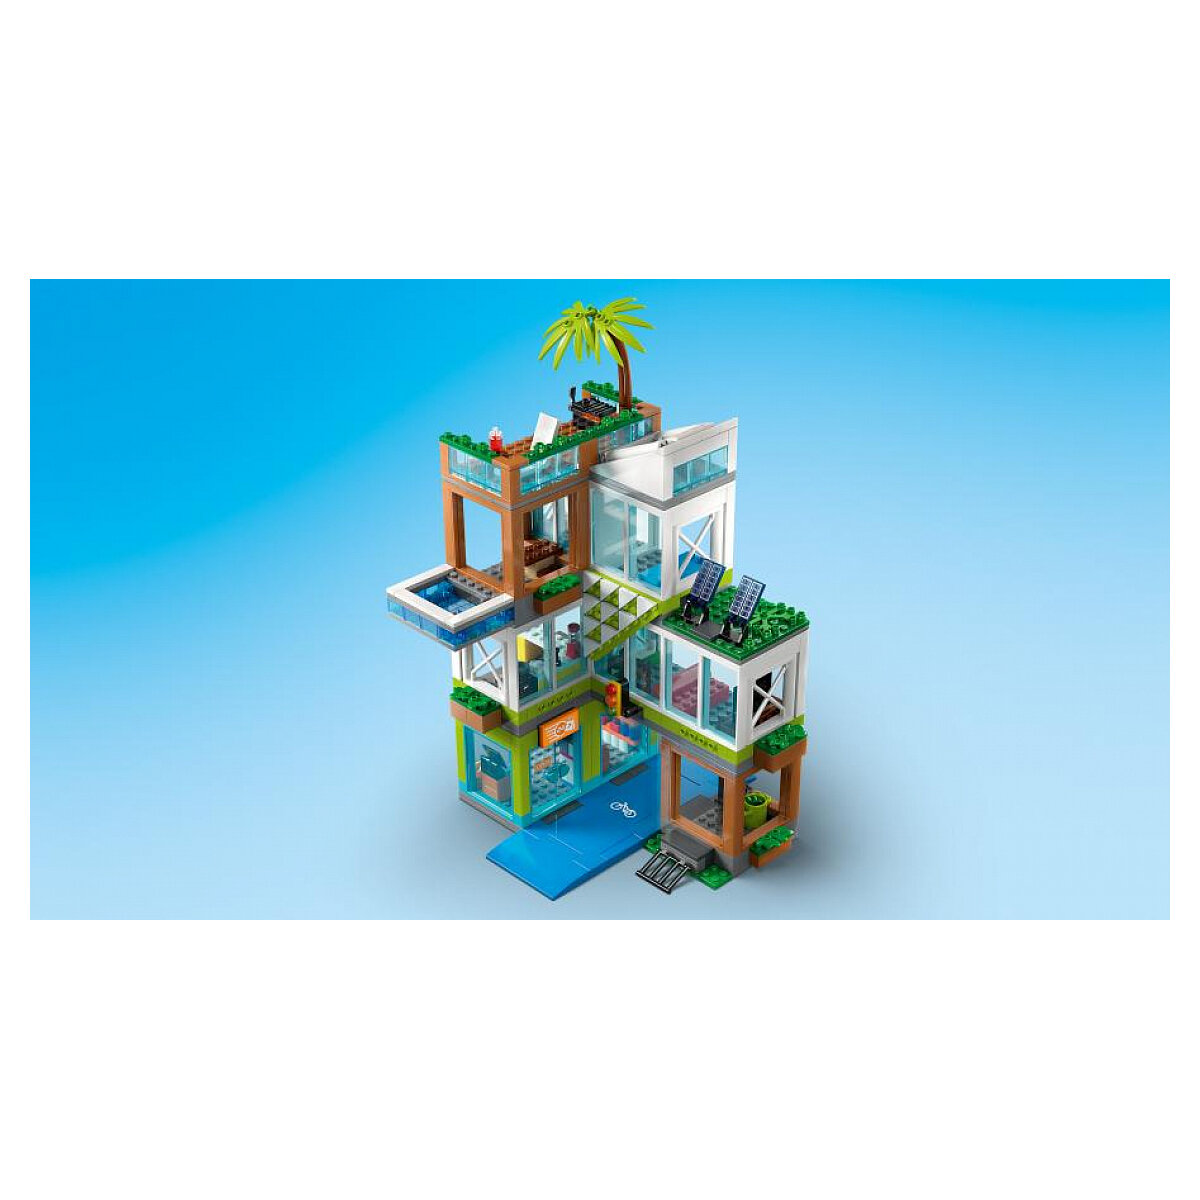 LEGO City 60365 pas cher, L'immeuble d'habitation